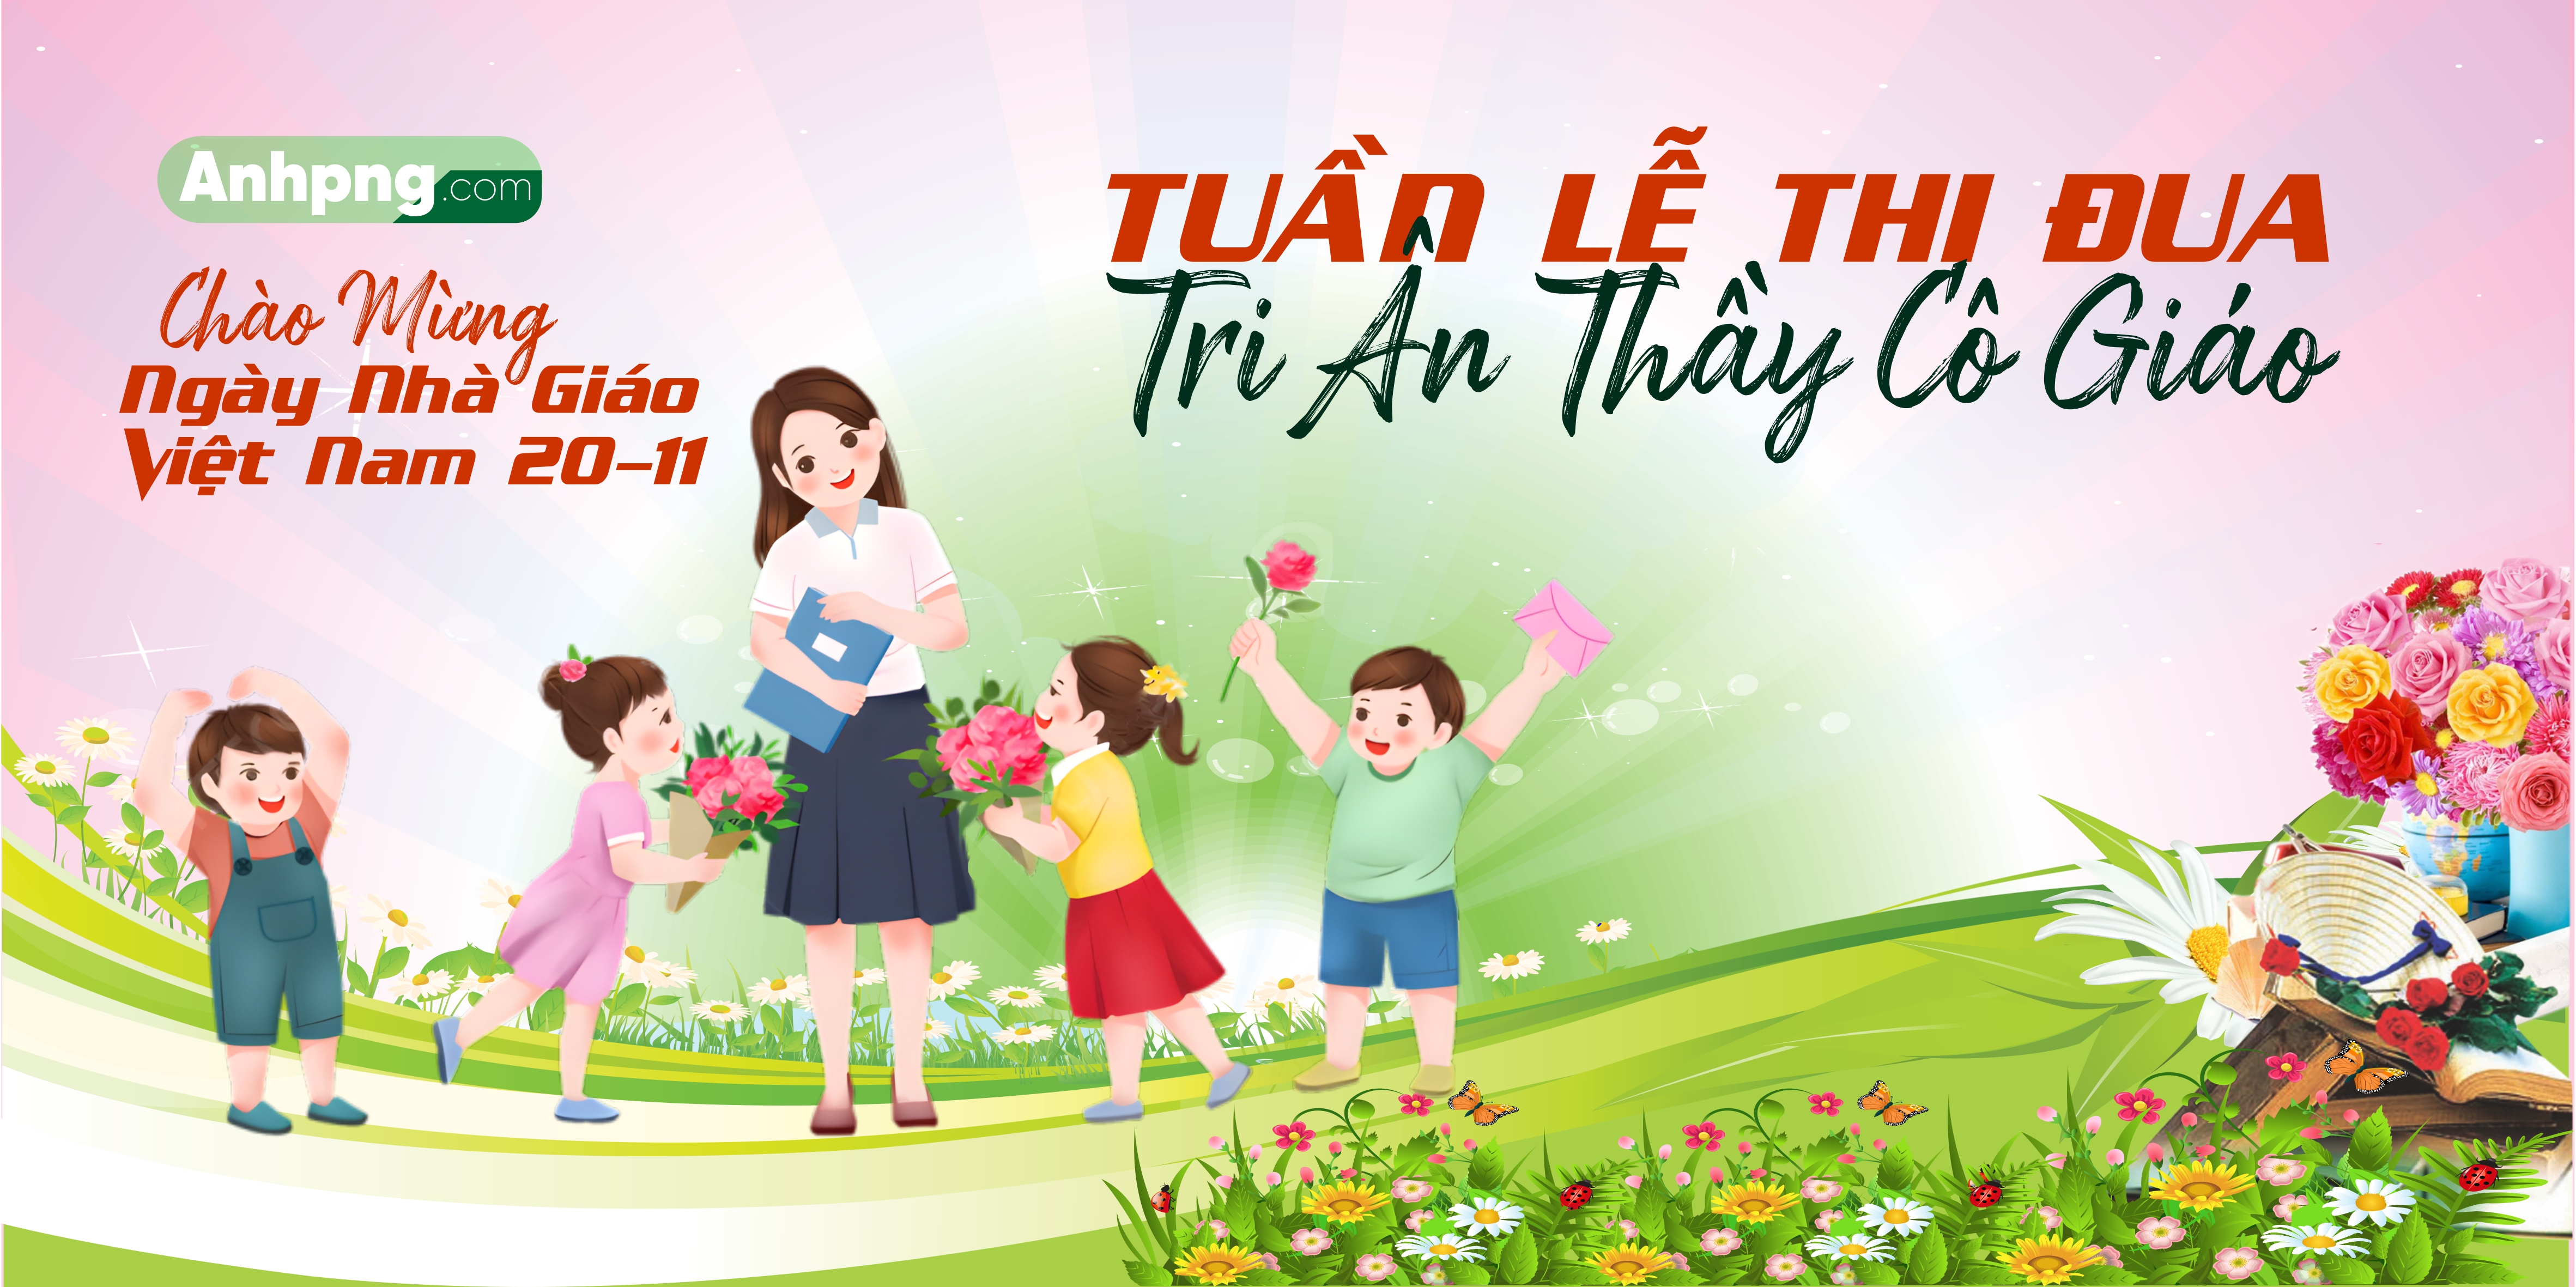 Market Chào Mừng Ngày Nhà Giáo Việt Nam 20 - 11 | Tuần lễ thi đua chào mừng ngày nhà giáo Việt Nam